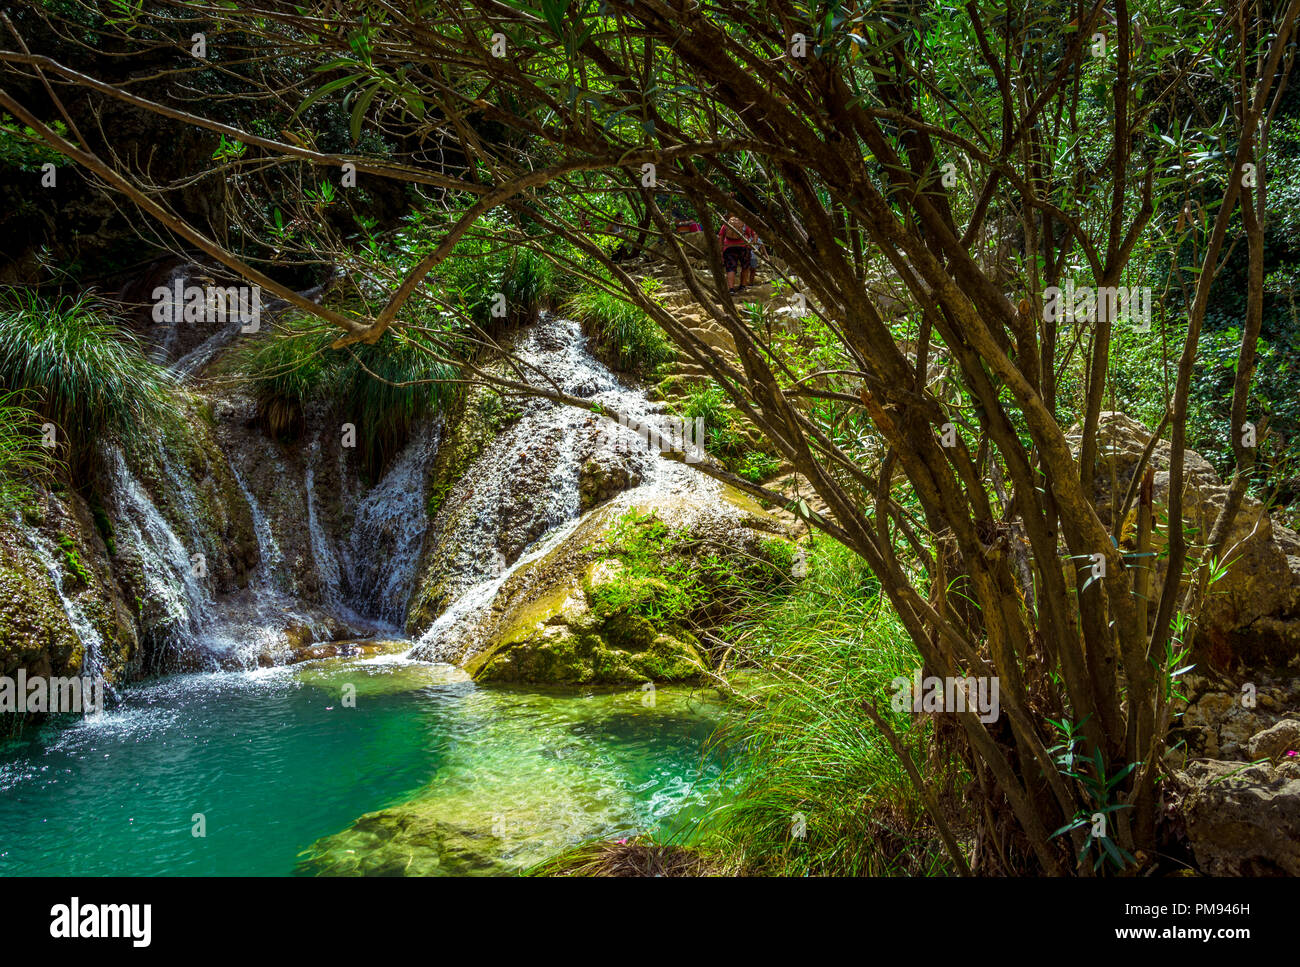 Natürlicher Wasserfall und See in Polilimnio Bereich in Griechenland. Polimnio ist ein Komplex von Wasserfällen und Seen sind in der Nähe von Charavgi Gemeinde, Messini entfernt Stockfoto